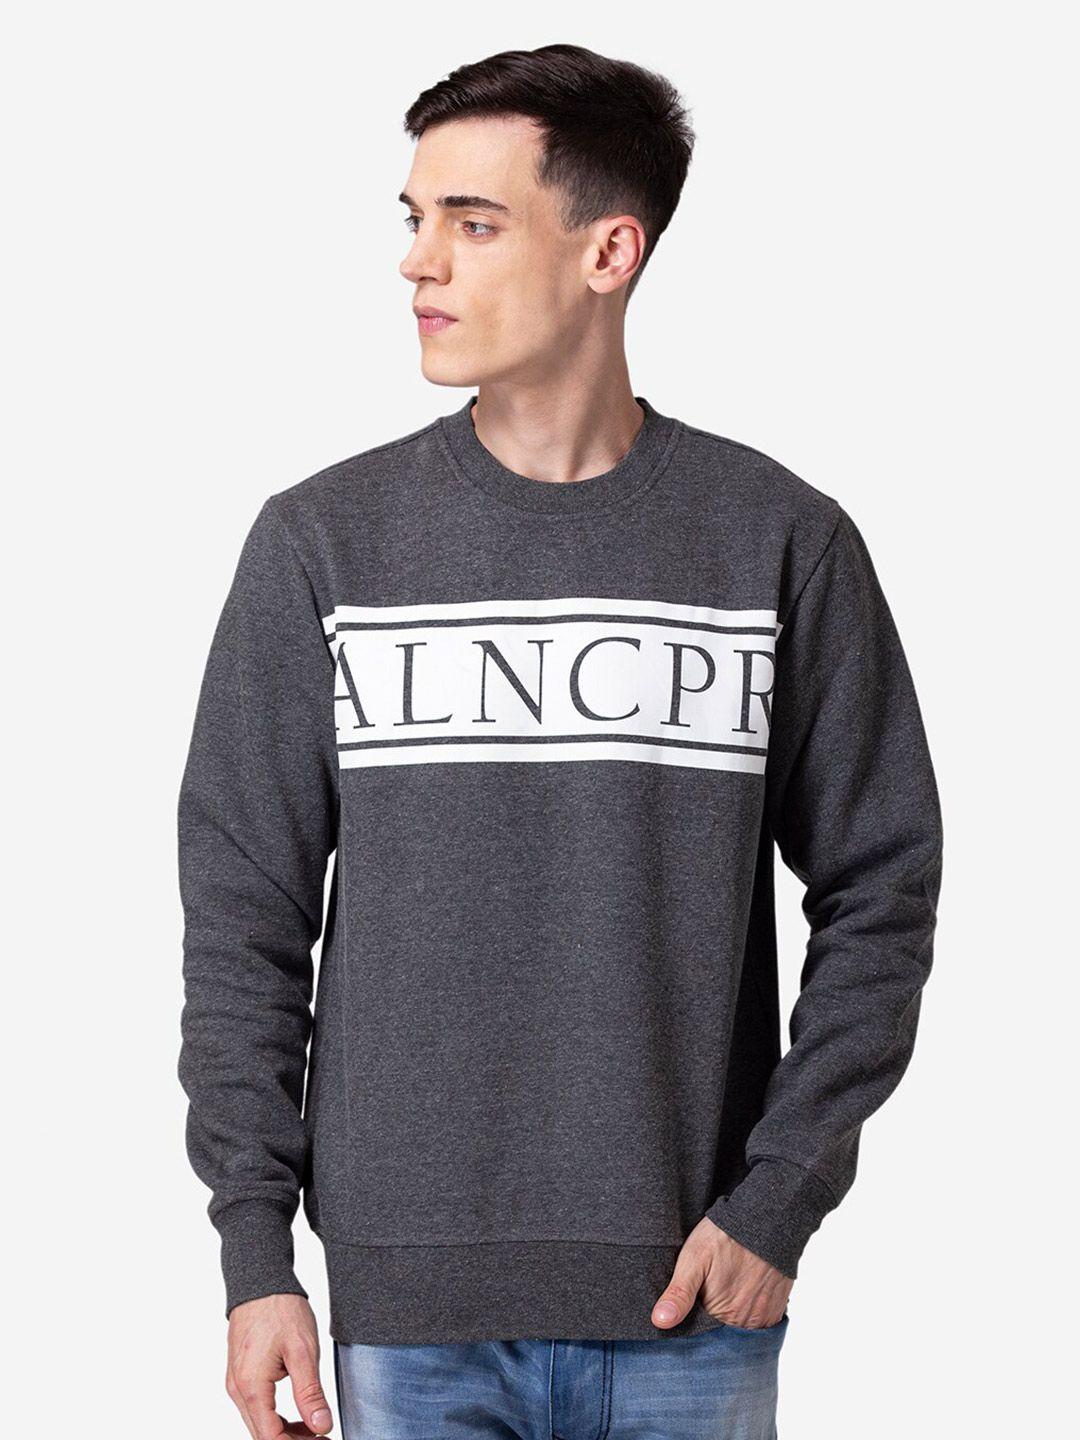 allen-cooper-men-printed-cotton-sweatshirt